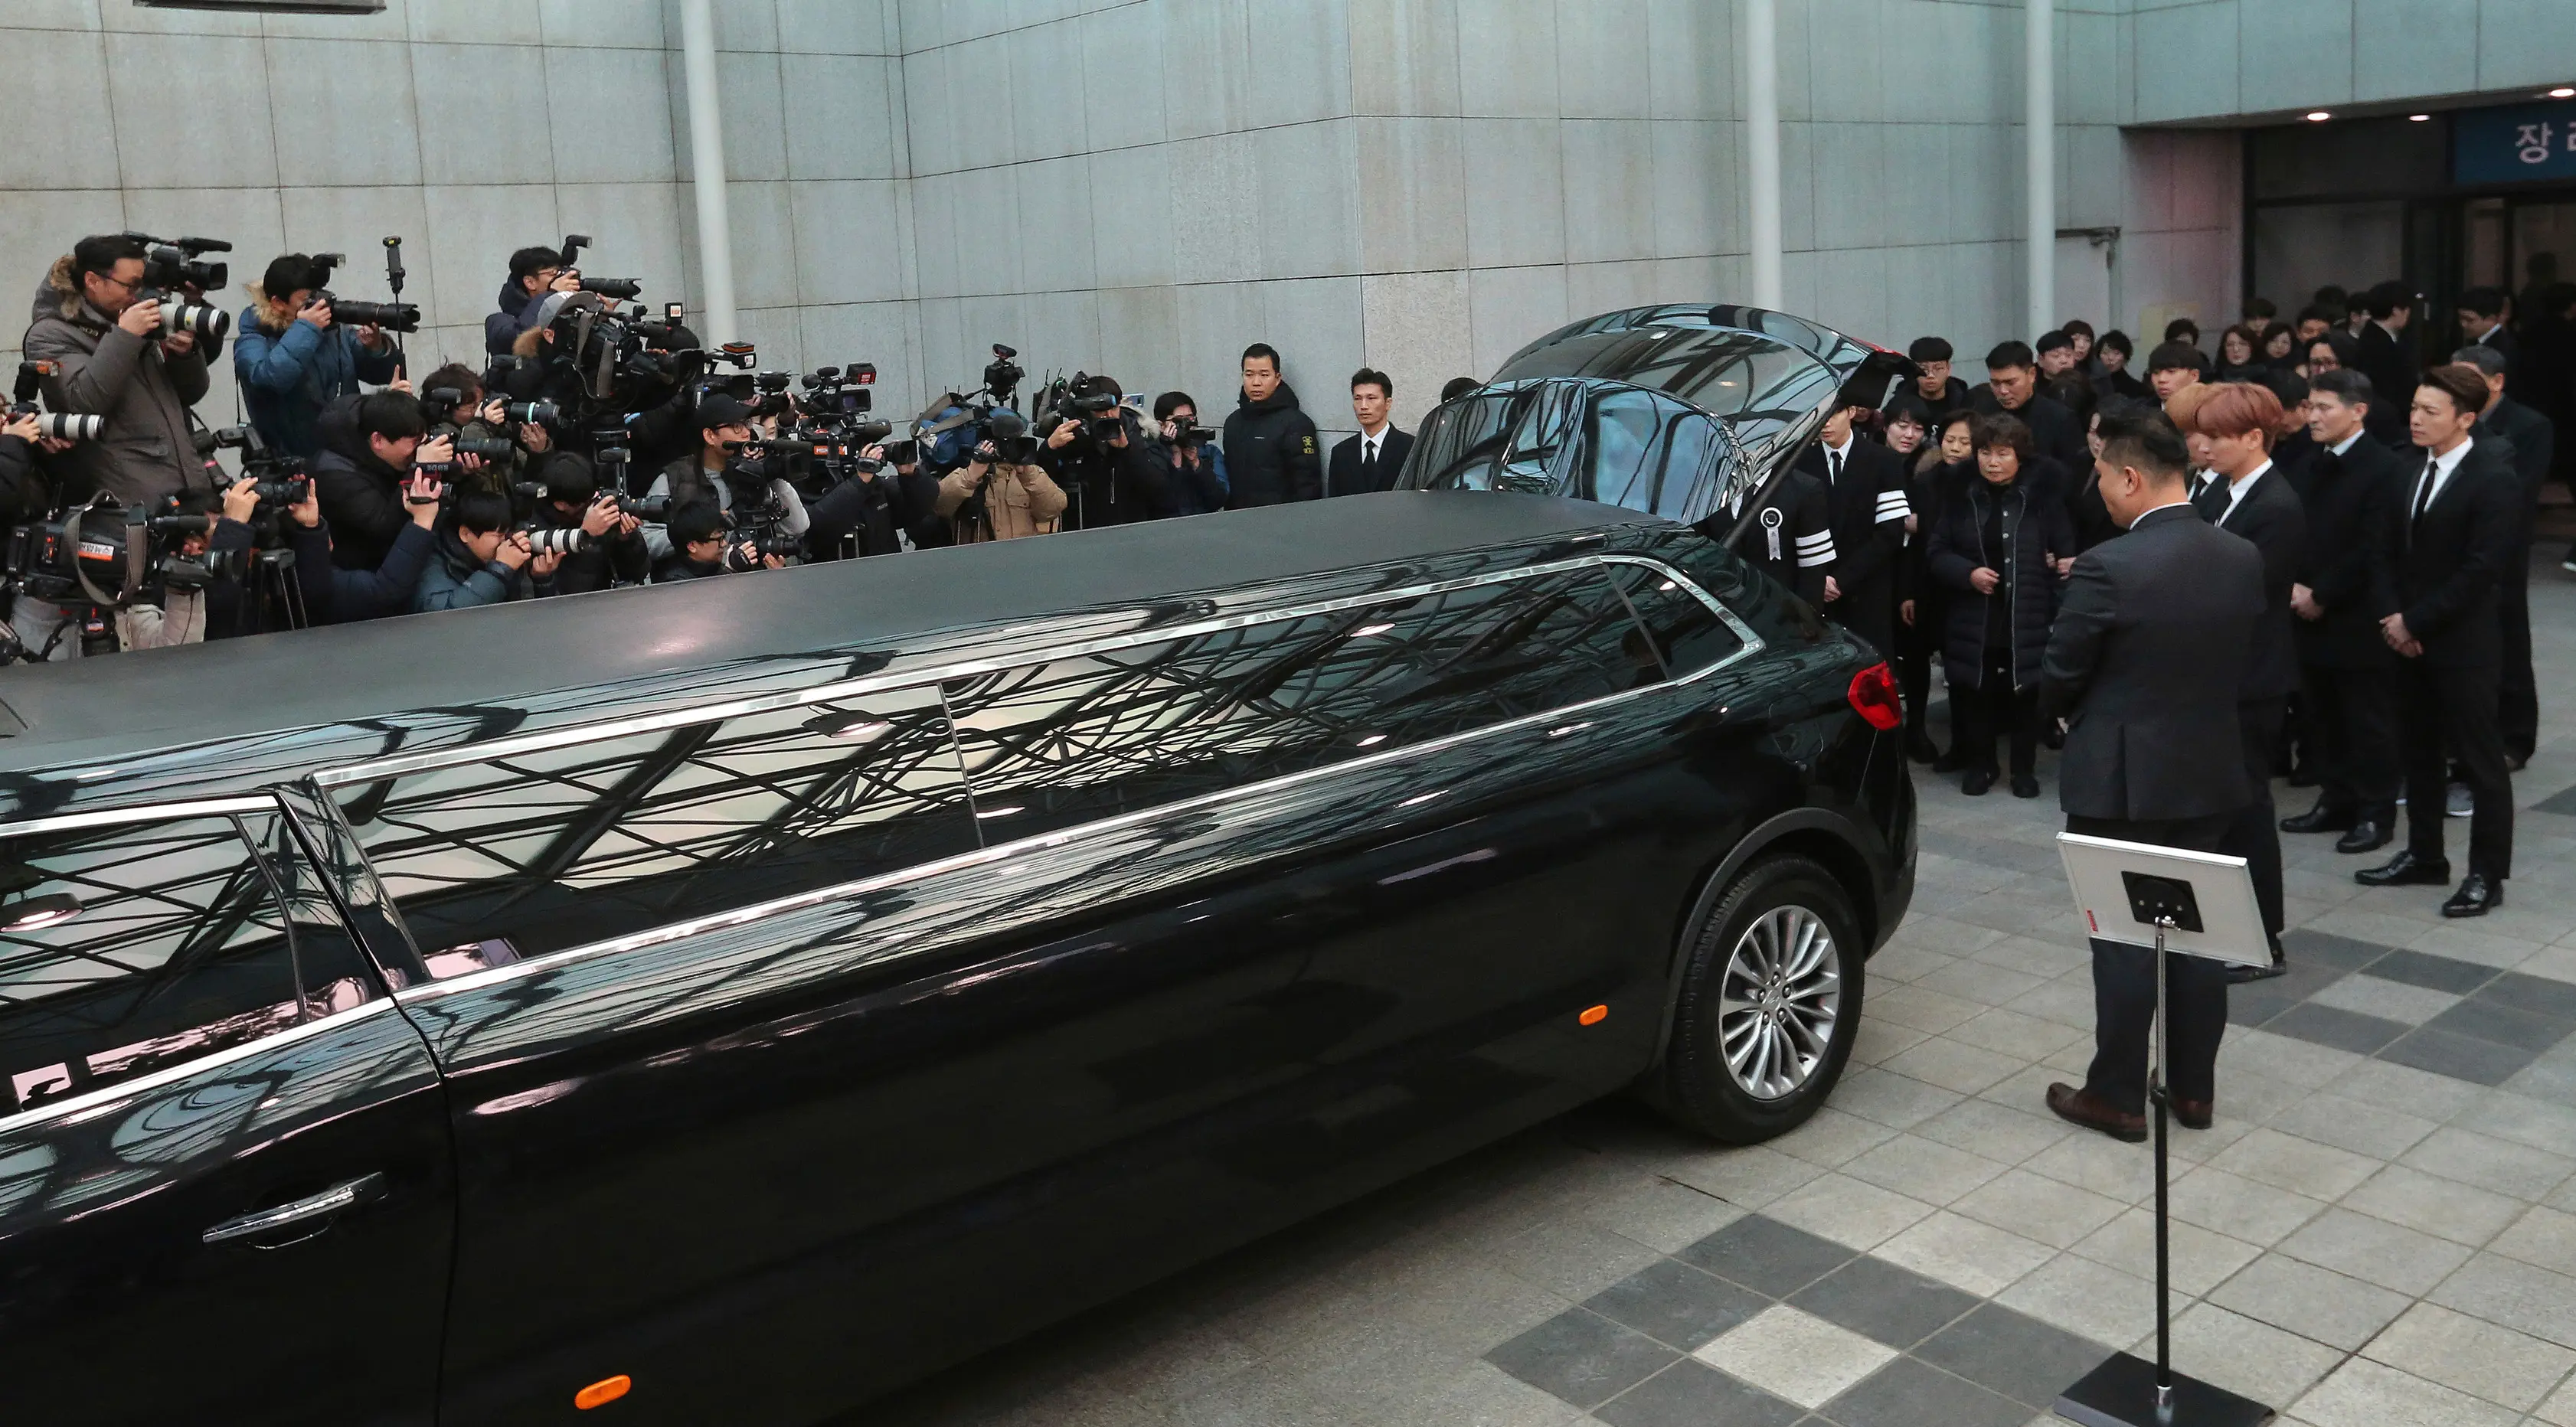 Keluarga, sahabat dan artis Korea Selatan pada prosesi pelepasan jenazah Jonghyun SHINee menuju tempat pemakaman dari Asan Hospital, Seoul, Kamis (21/12). Upacara pemakaman Jonghyun digelar tertutup dan keluarga merahasiakan lokasinya. (AP/Ahn Young-joon)